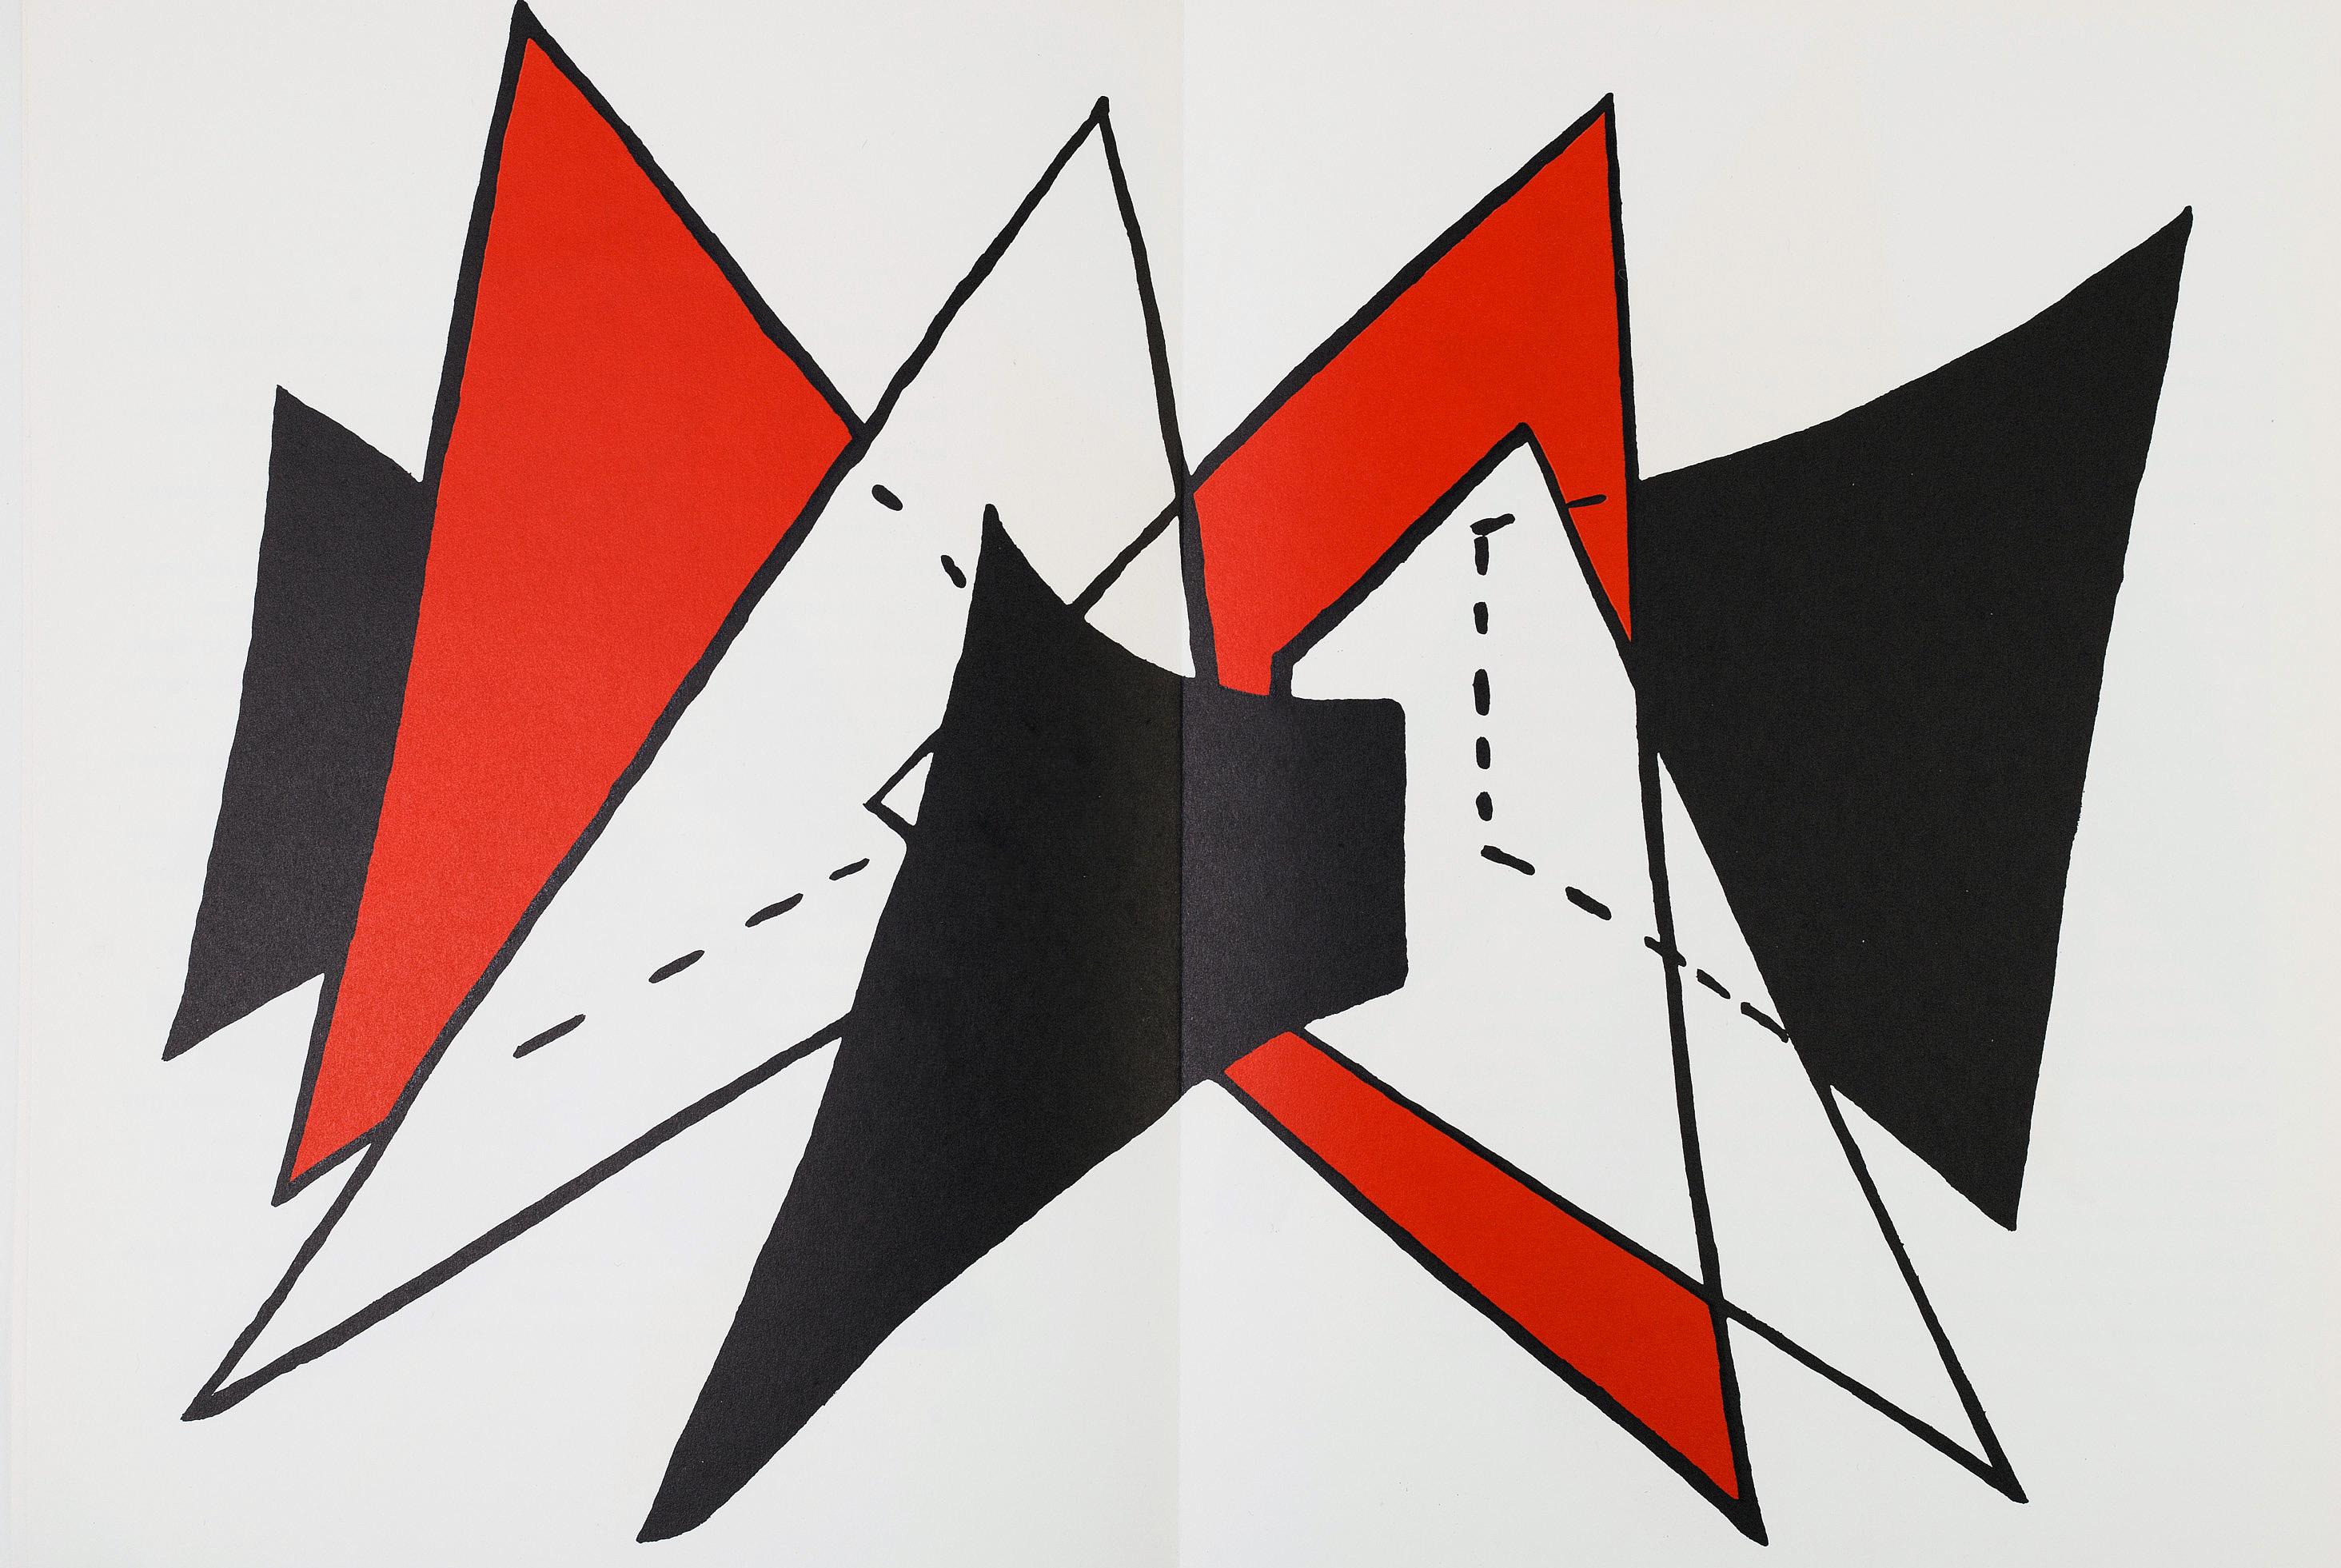 Vintage 1960s Alexander Calder Lithographie.  
Veröffentlicht von: Galerie Maeght, Paris, 1963. 
Portfolio: Derrière le Miroir.

Medium: Farblithographie. 
15 x 22 Zoll.
Center fold-line wie ausgegeben; sehr guter Gesamtzustand für sein